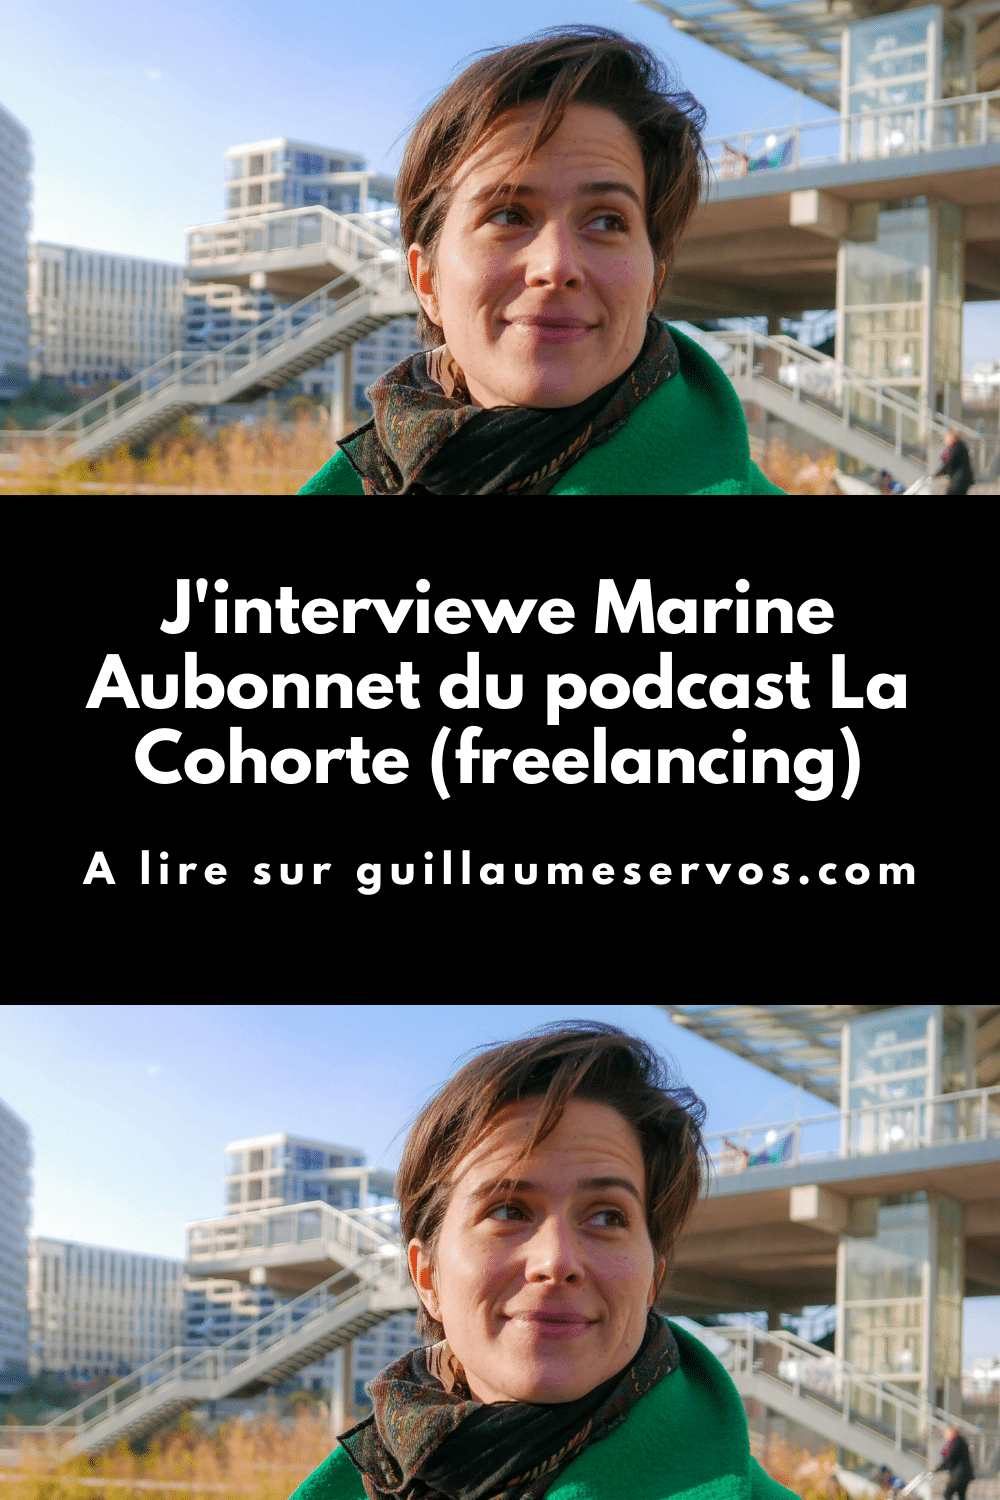 Découvre mon interview avec Marine Aubonnet du podcast La Cohorte. Au menu : son rapport au freelancing, au podcasting, aux réseaux sociaux et au voyage.